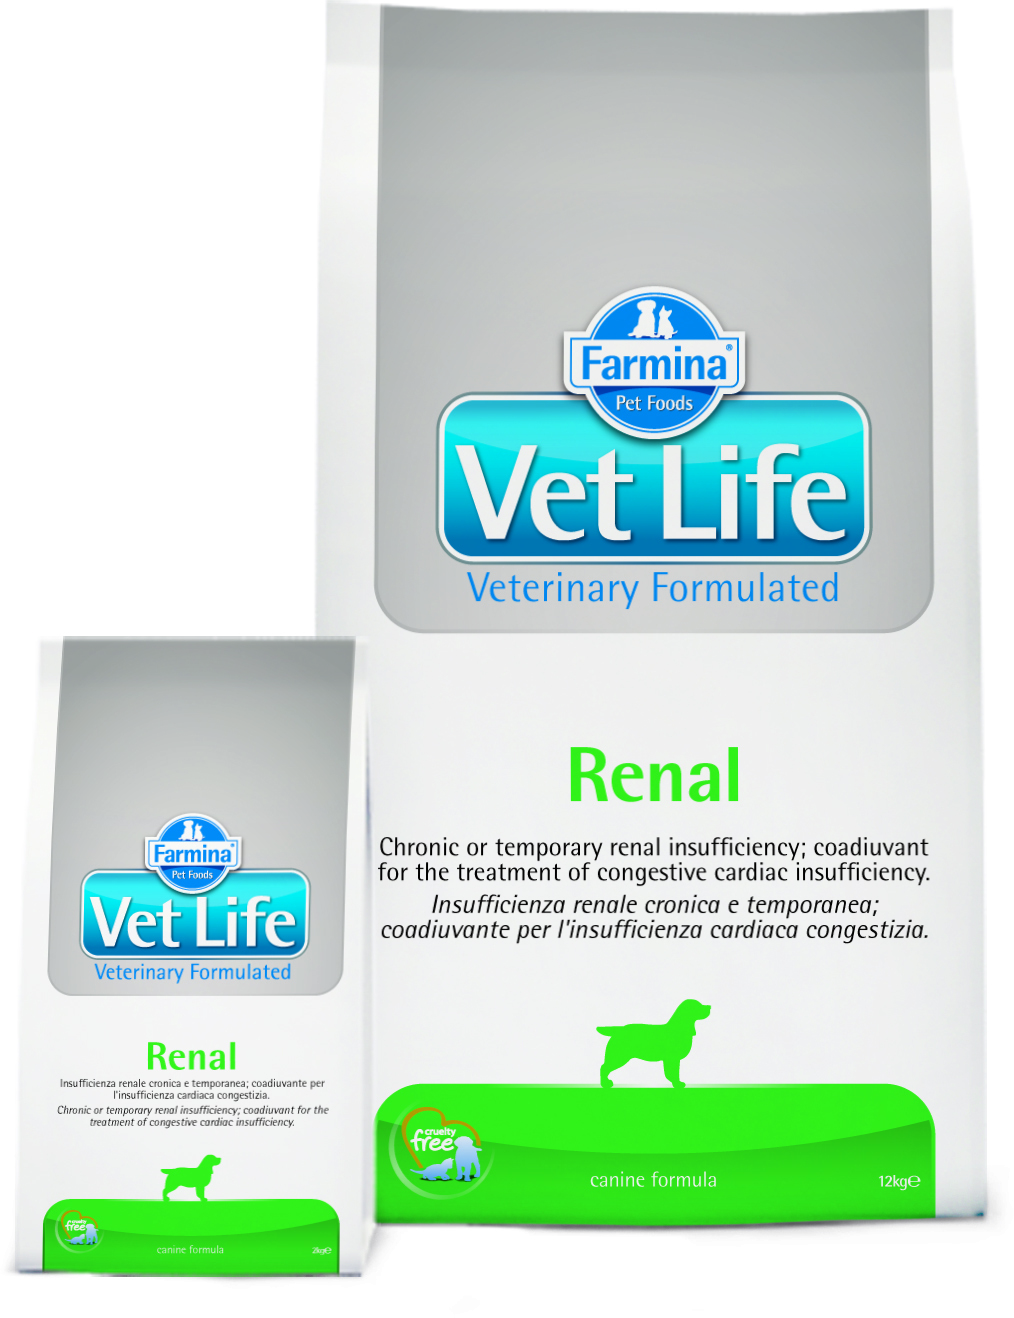 Vet life renal купить. Farmina vet Life Dog renal 2 кг. Farmina vet Life renal. Сухой корм для собак Farmina vet Life renal, при заболеваниях почек 2 кг. Vet Life корм renal для собак.